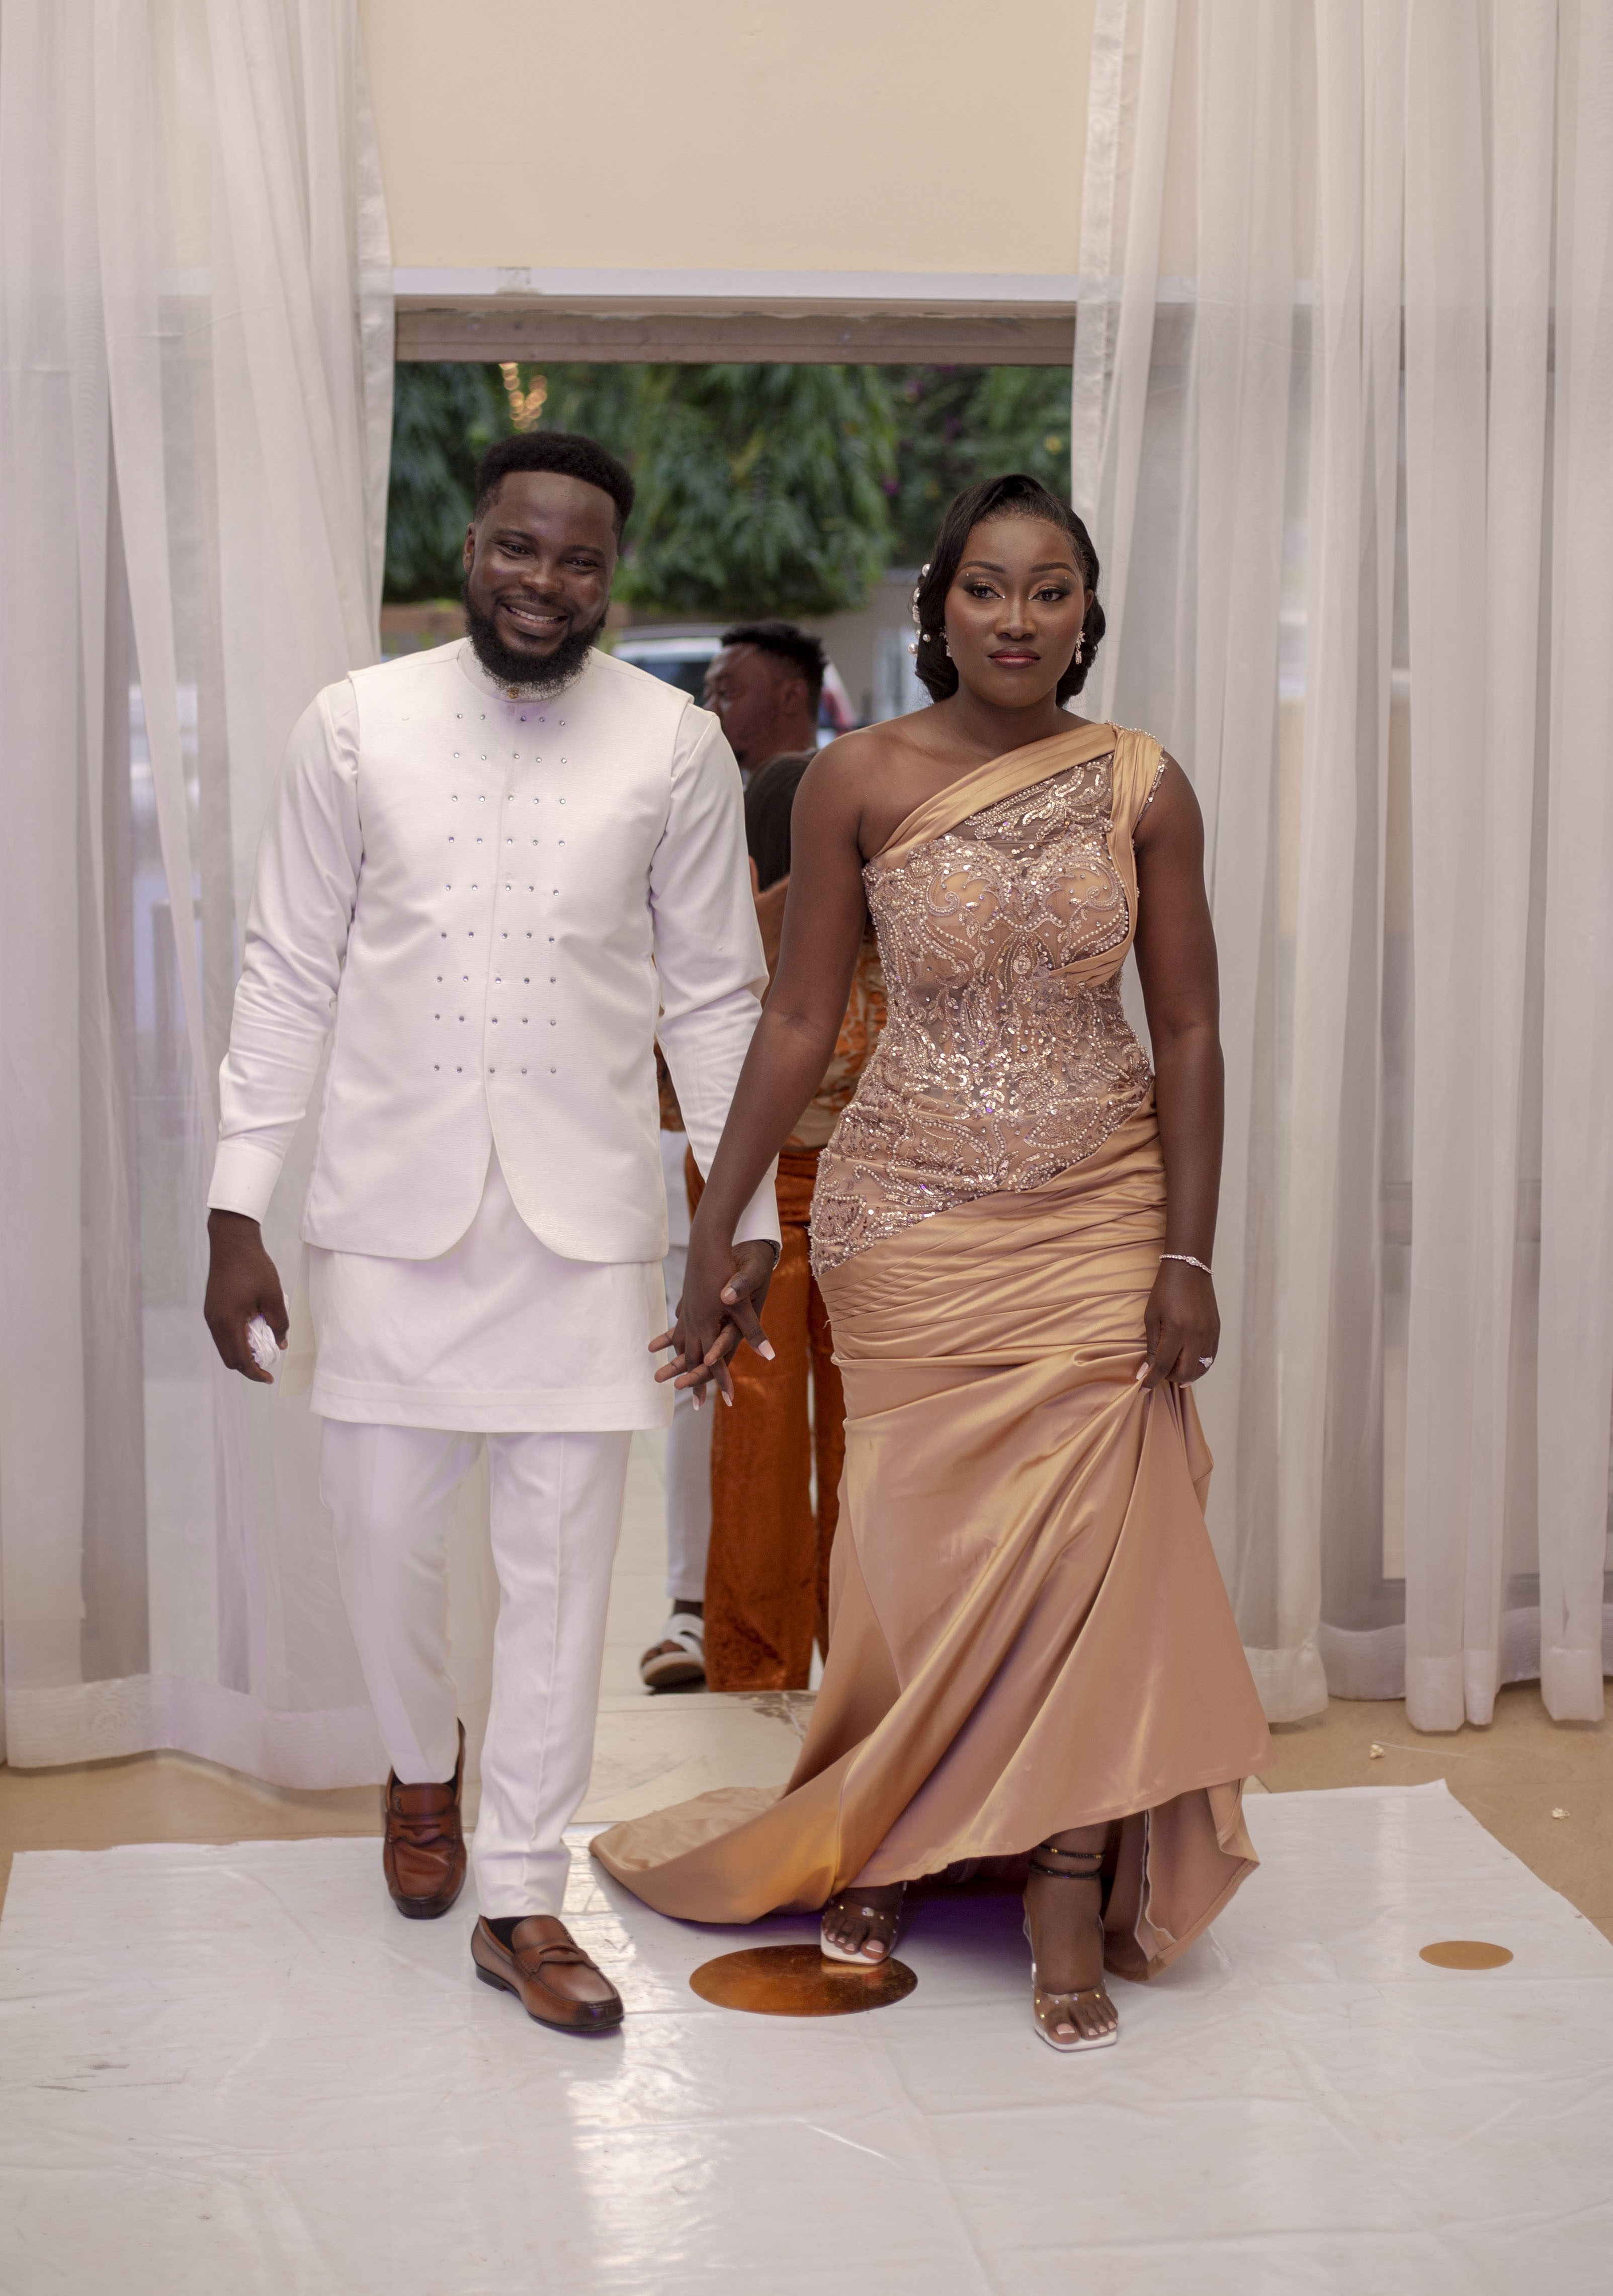 Mawuli and Nunya's wedding